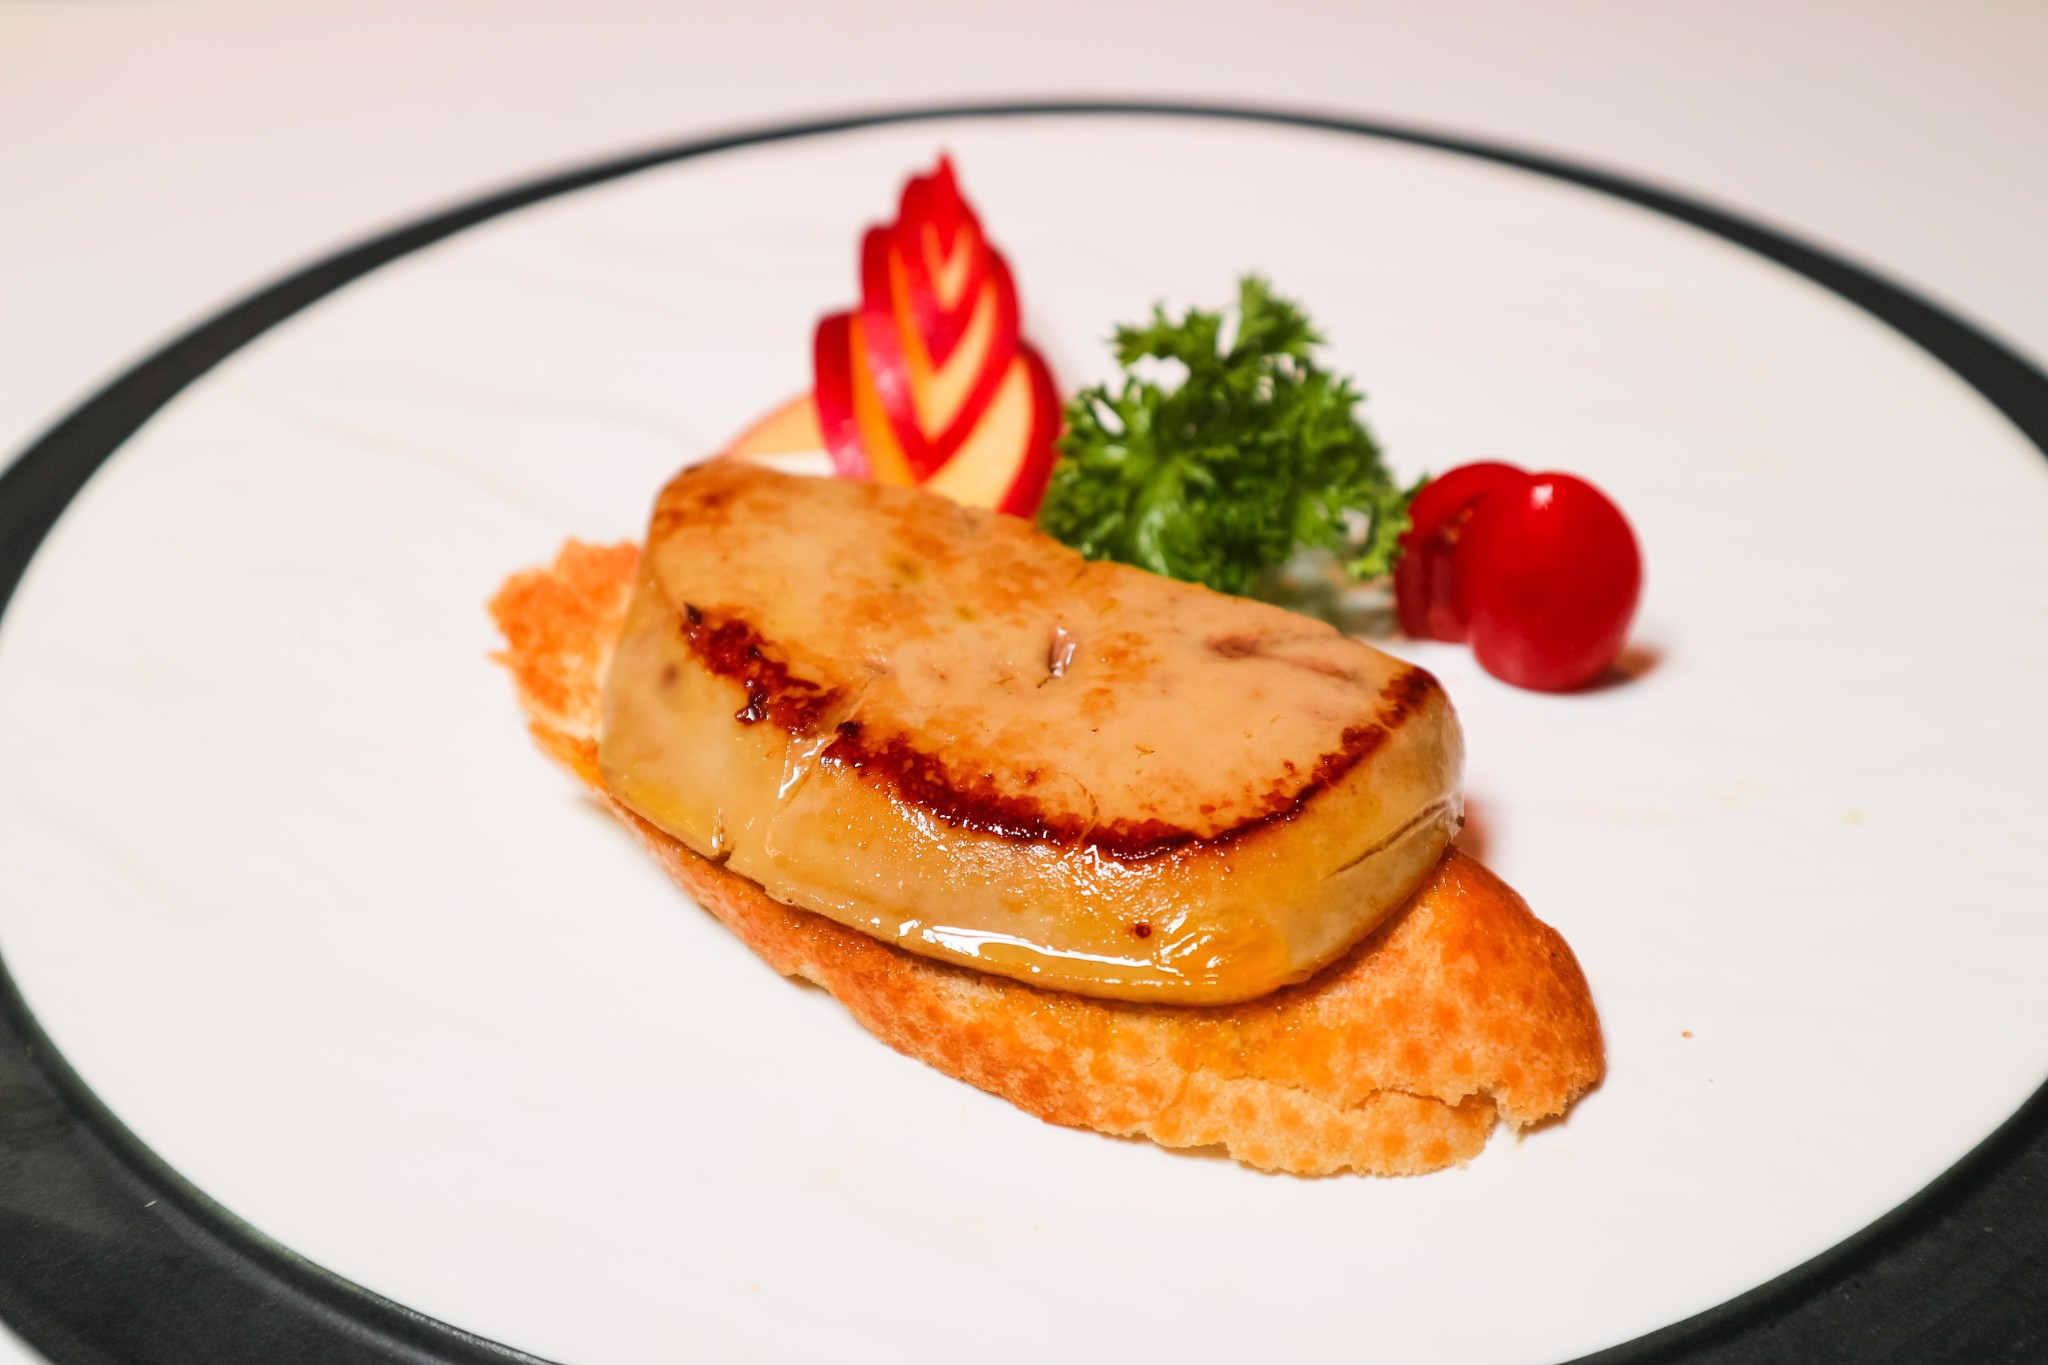 Foie gras là món ăn đặc trưng từ gan ngỗng